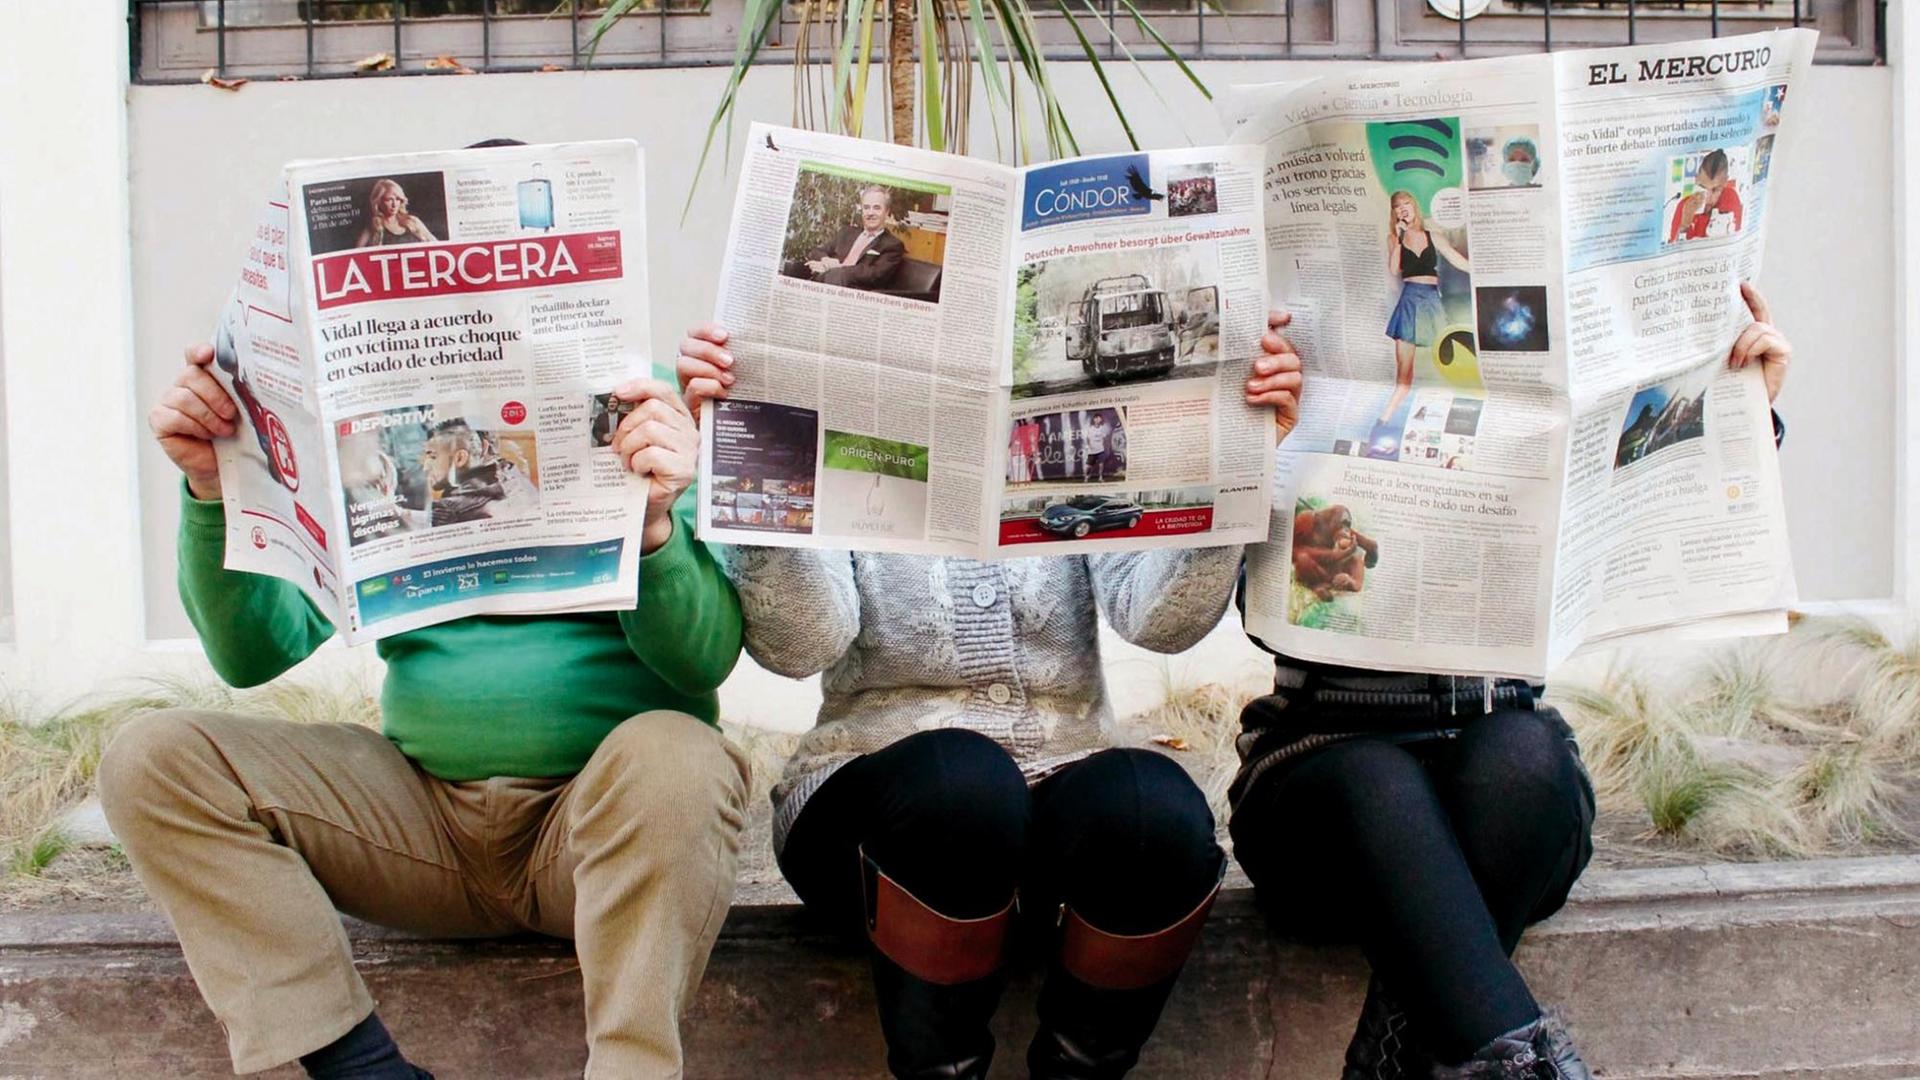 Auf einem Bürgersteig sitzen drei Personen, die Zeitungen lesen und deren Köpfe dahinter versteckt sind. Auf den Zeitungen sind die Titel zu lesen: "Latercera", "Condor" und "El Mercurio".